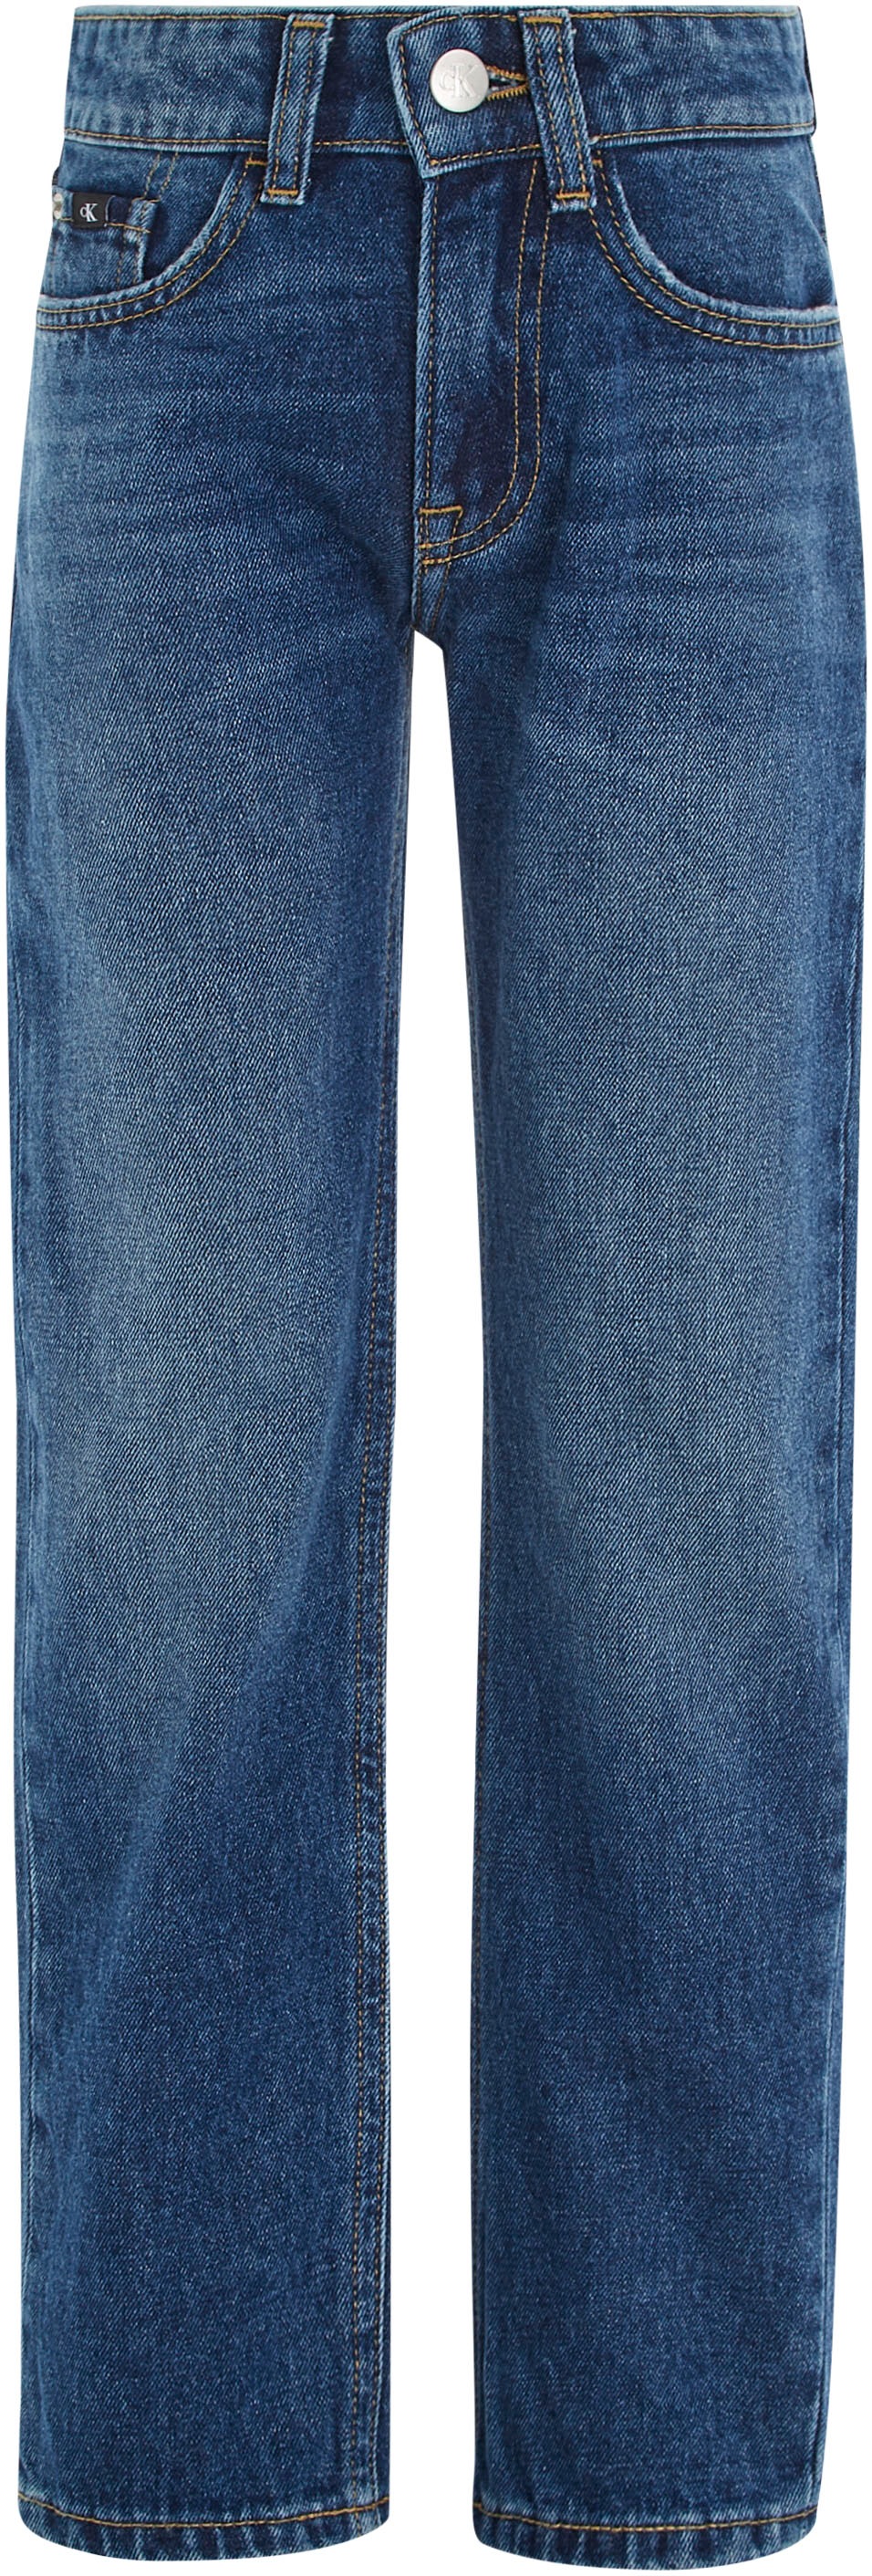 Calvin Klein Jeans Stretch-Jeans »REGULAR STRAIGHT OCEAN BLUE« kaufen